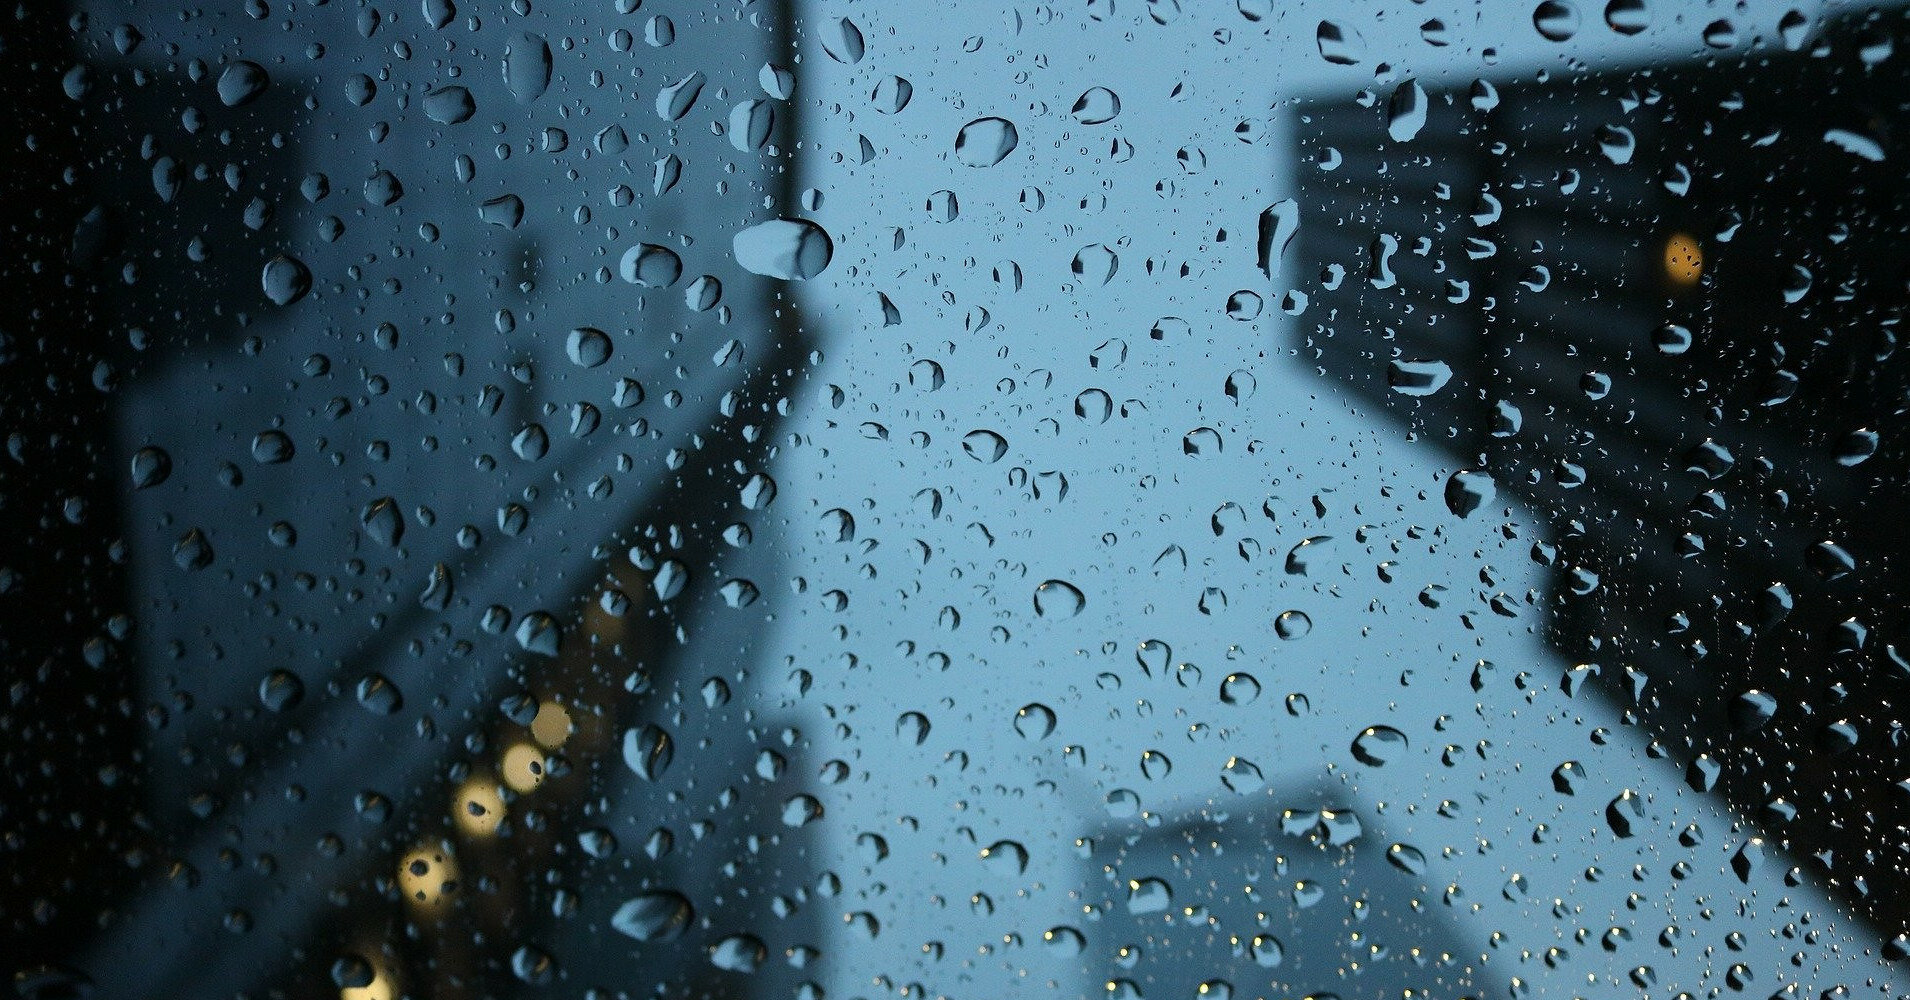 Нічні заморозки й дощ: якої погоди чекати в понеділок - Події в Україні -  Курс України